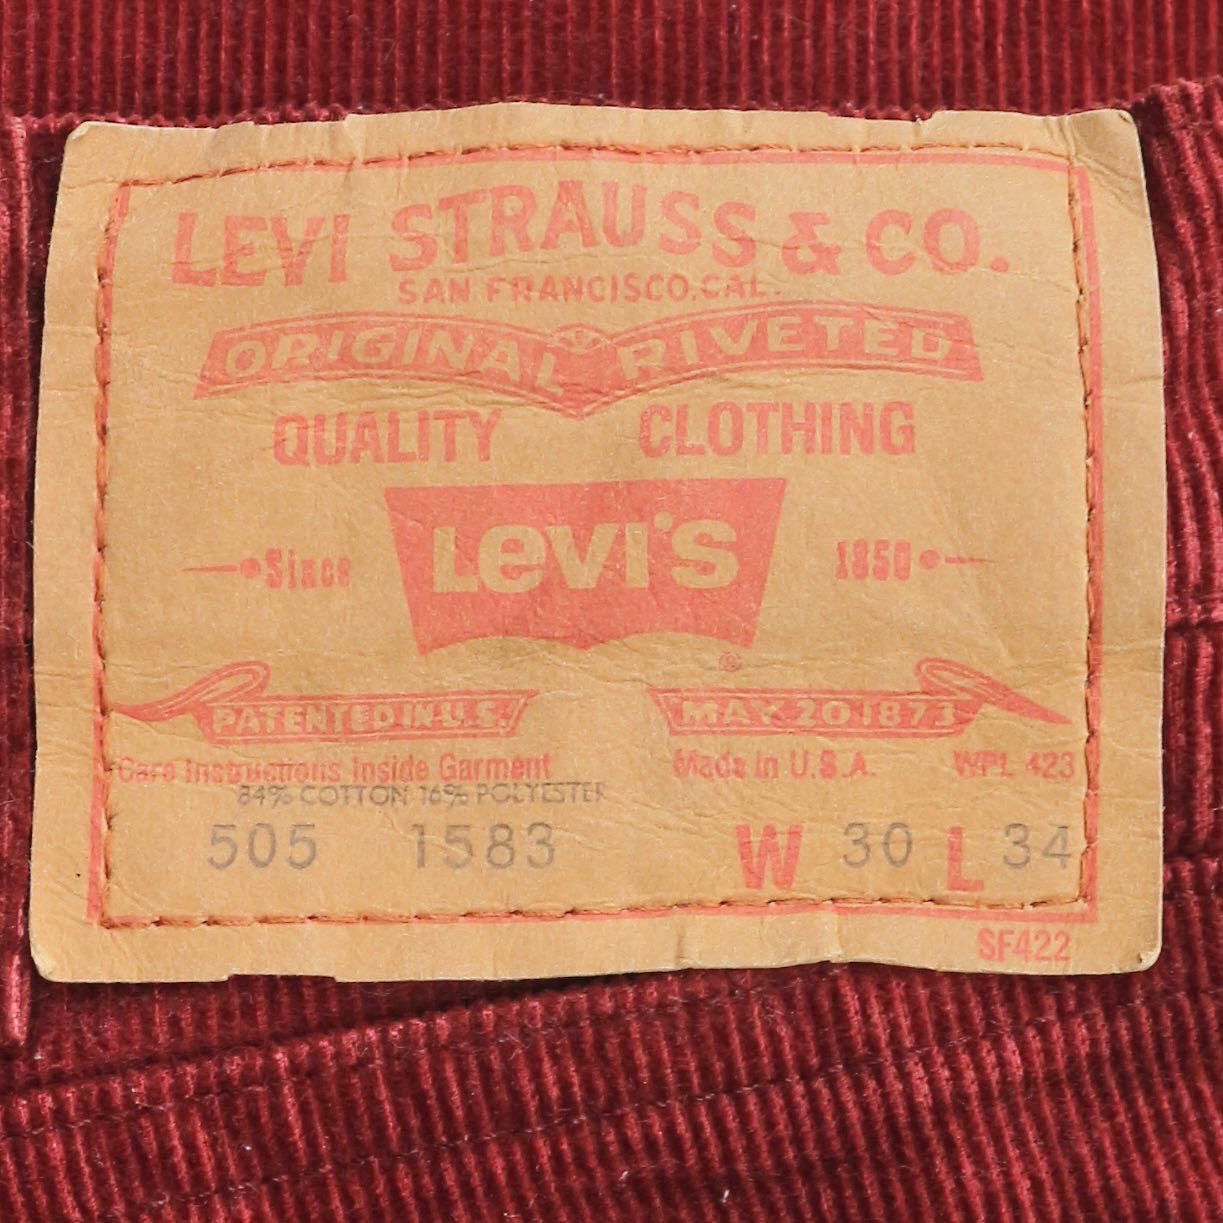 Vintage 70s Levi’s Lot 505 Corduroy Pants Size 30